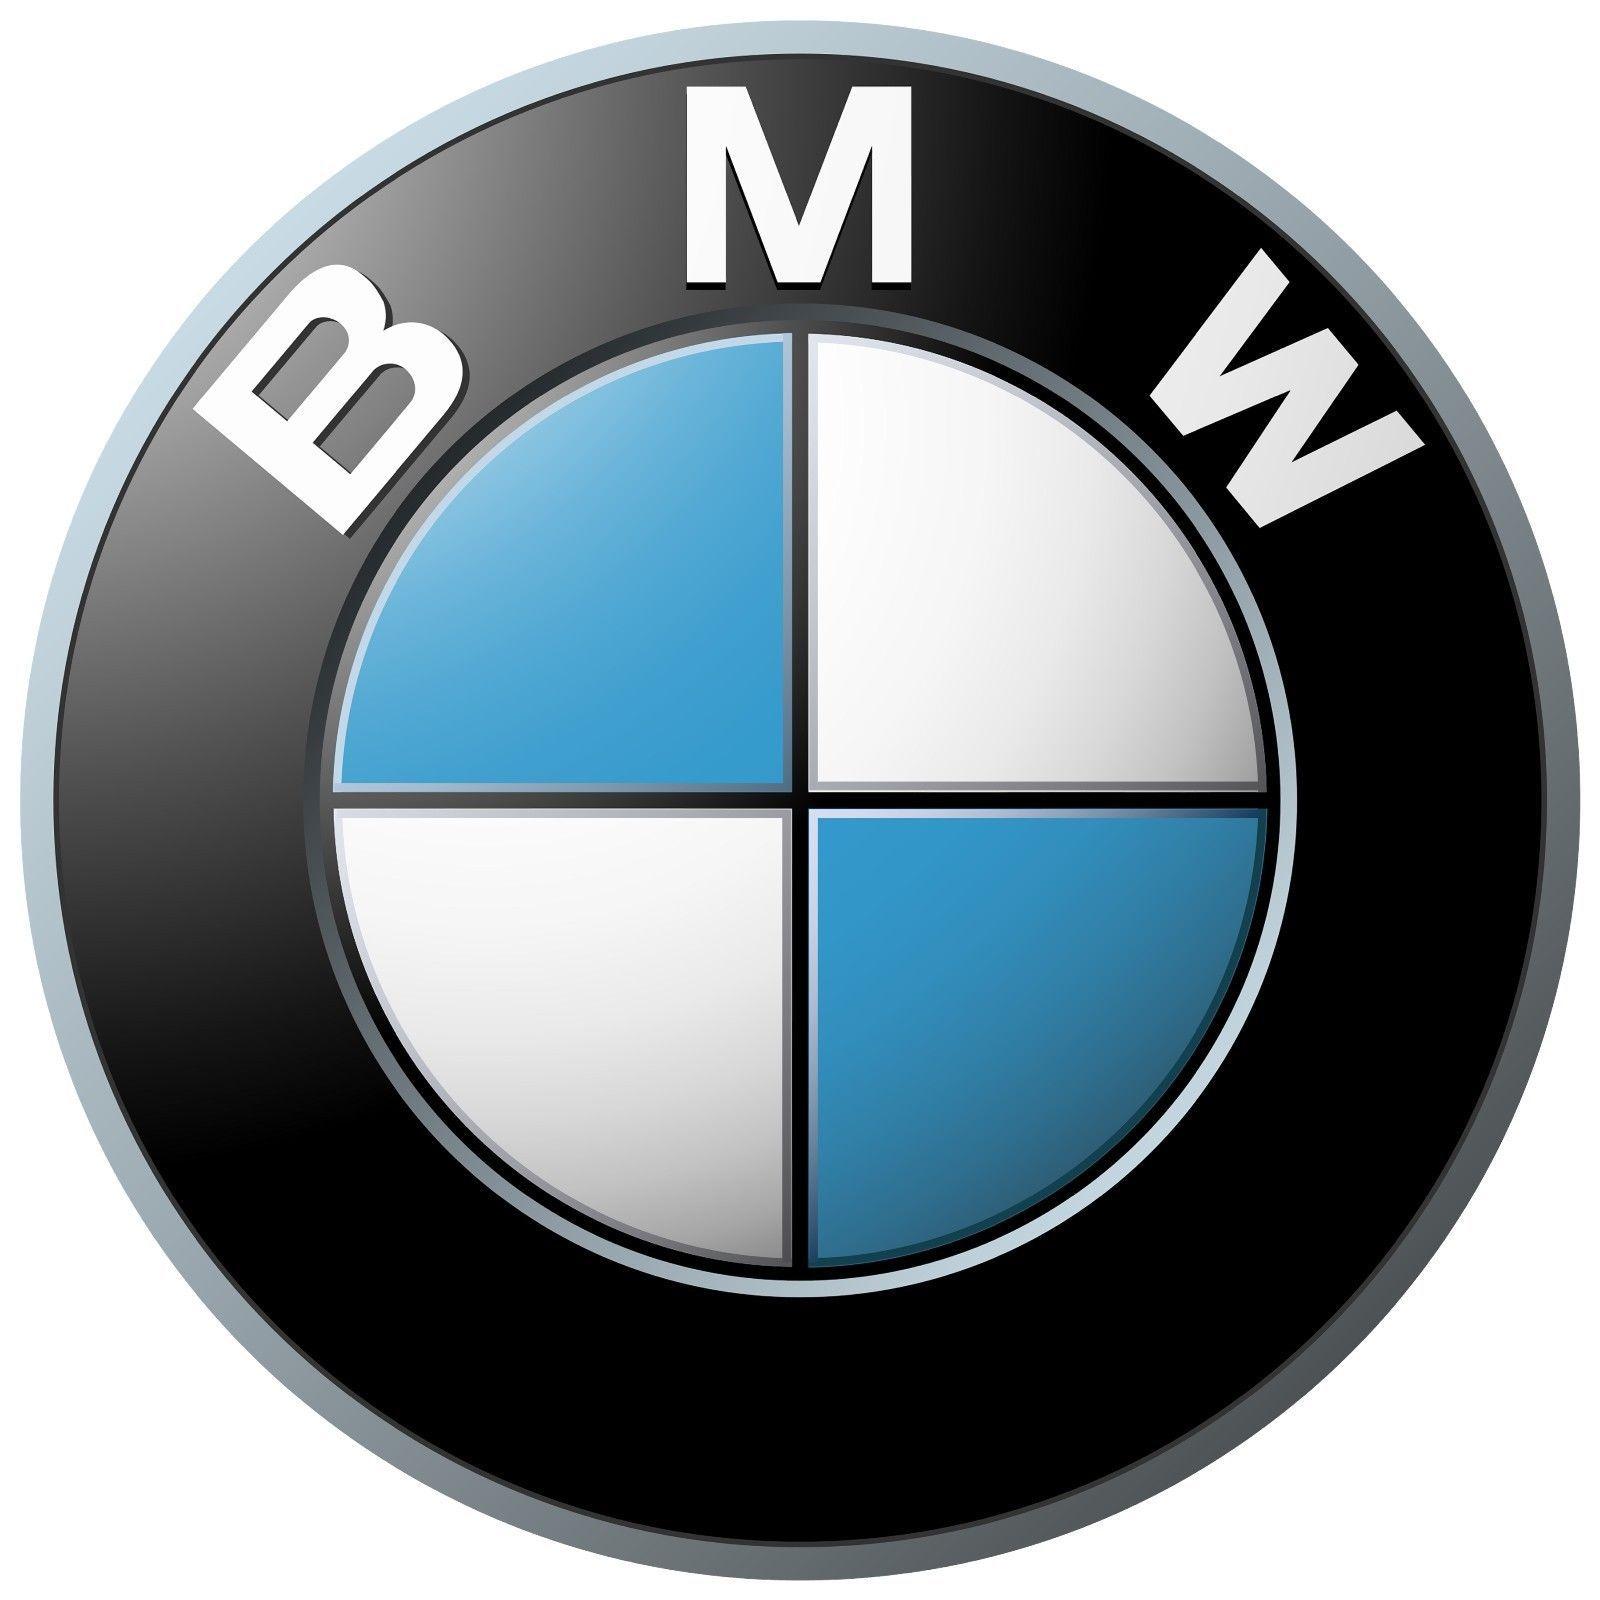 Awesome BMW Logo - Awesome BMW Emblem Logo Decal Sticker Car Window Laptop Wall 2018 ...